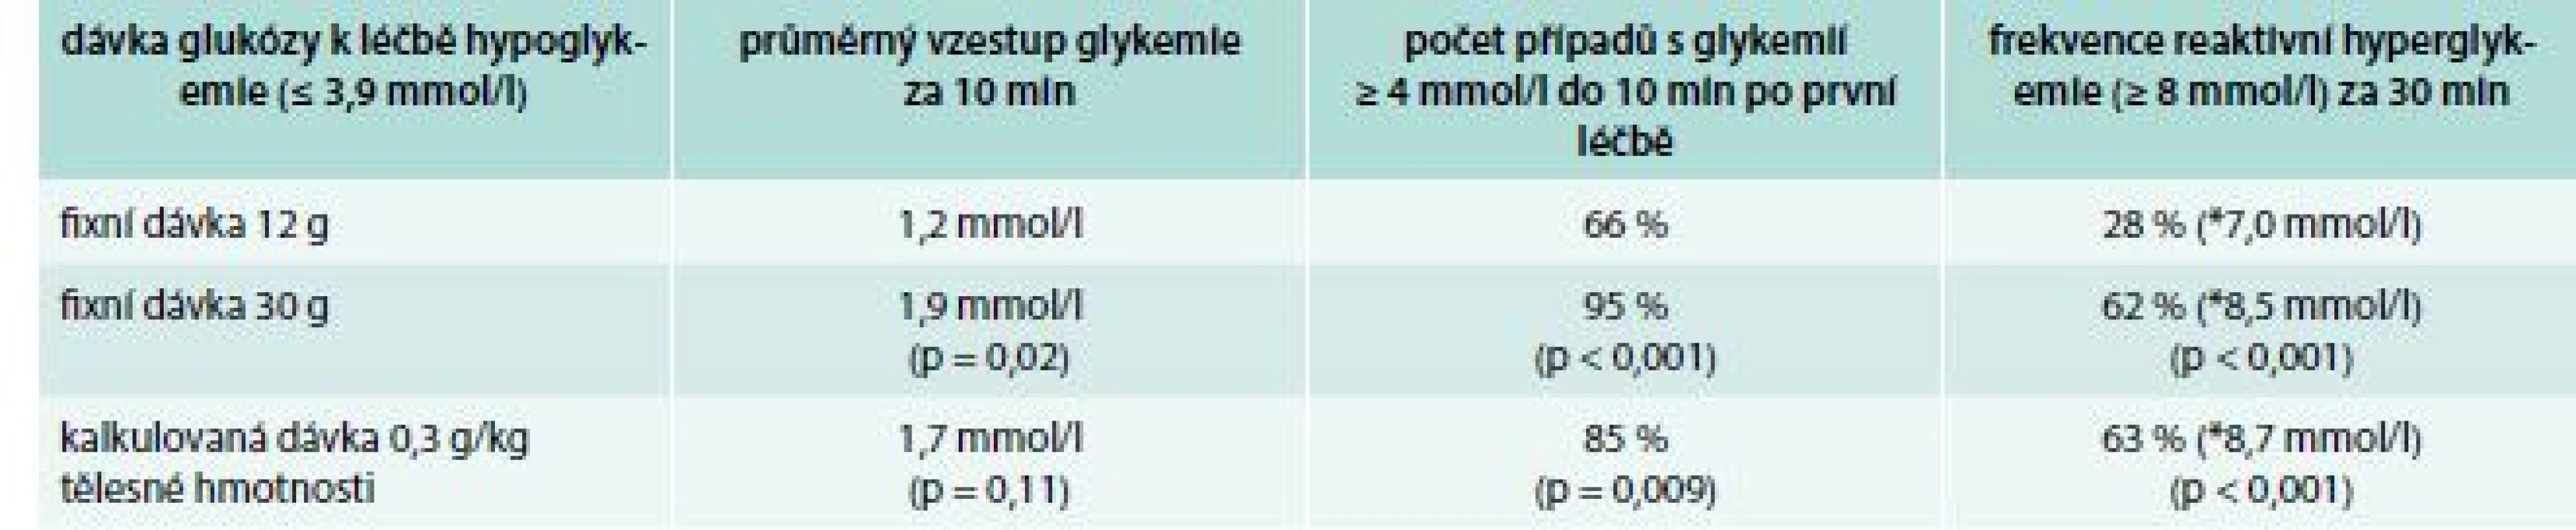 Efekt rozdílných dávek glukózy v léčbě hypoglykemií u diabetiků 2. typu léčených inzulinem